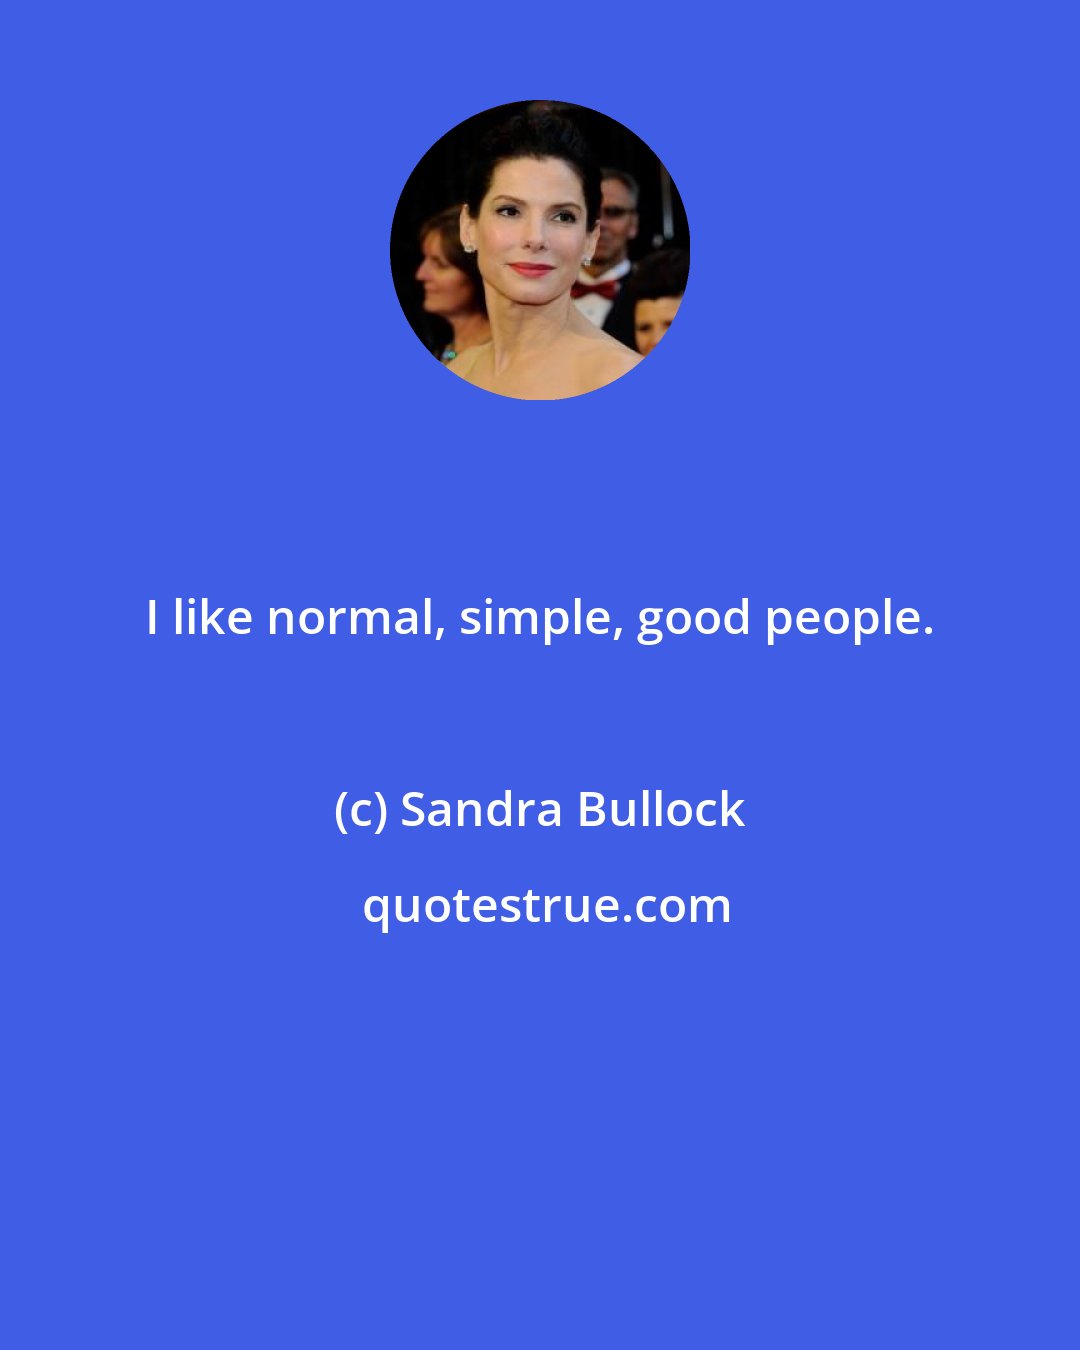 Sandra Bullock: I like normal, simple, good people.